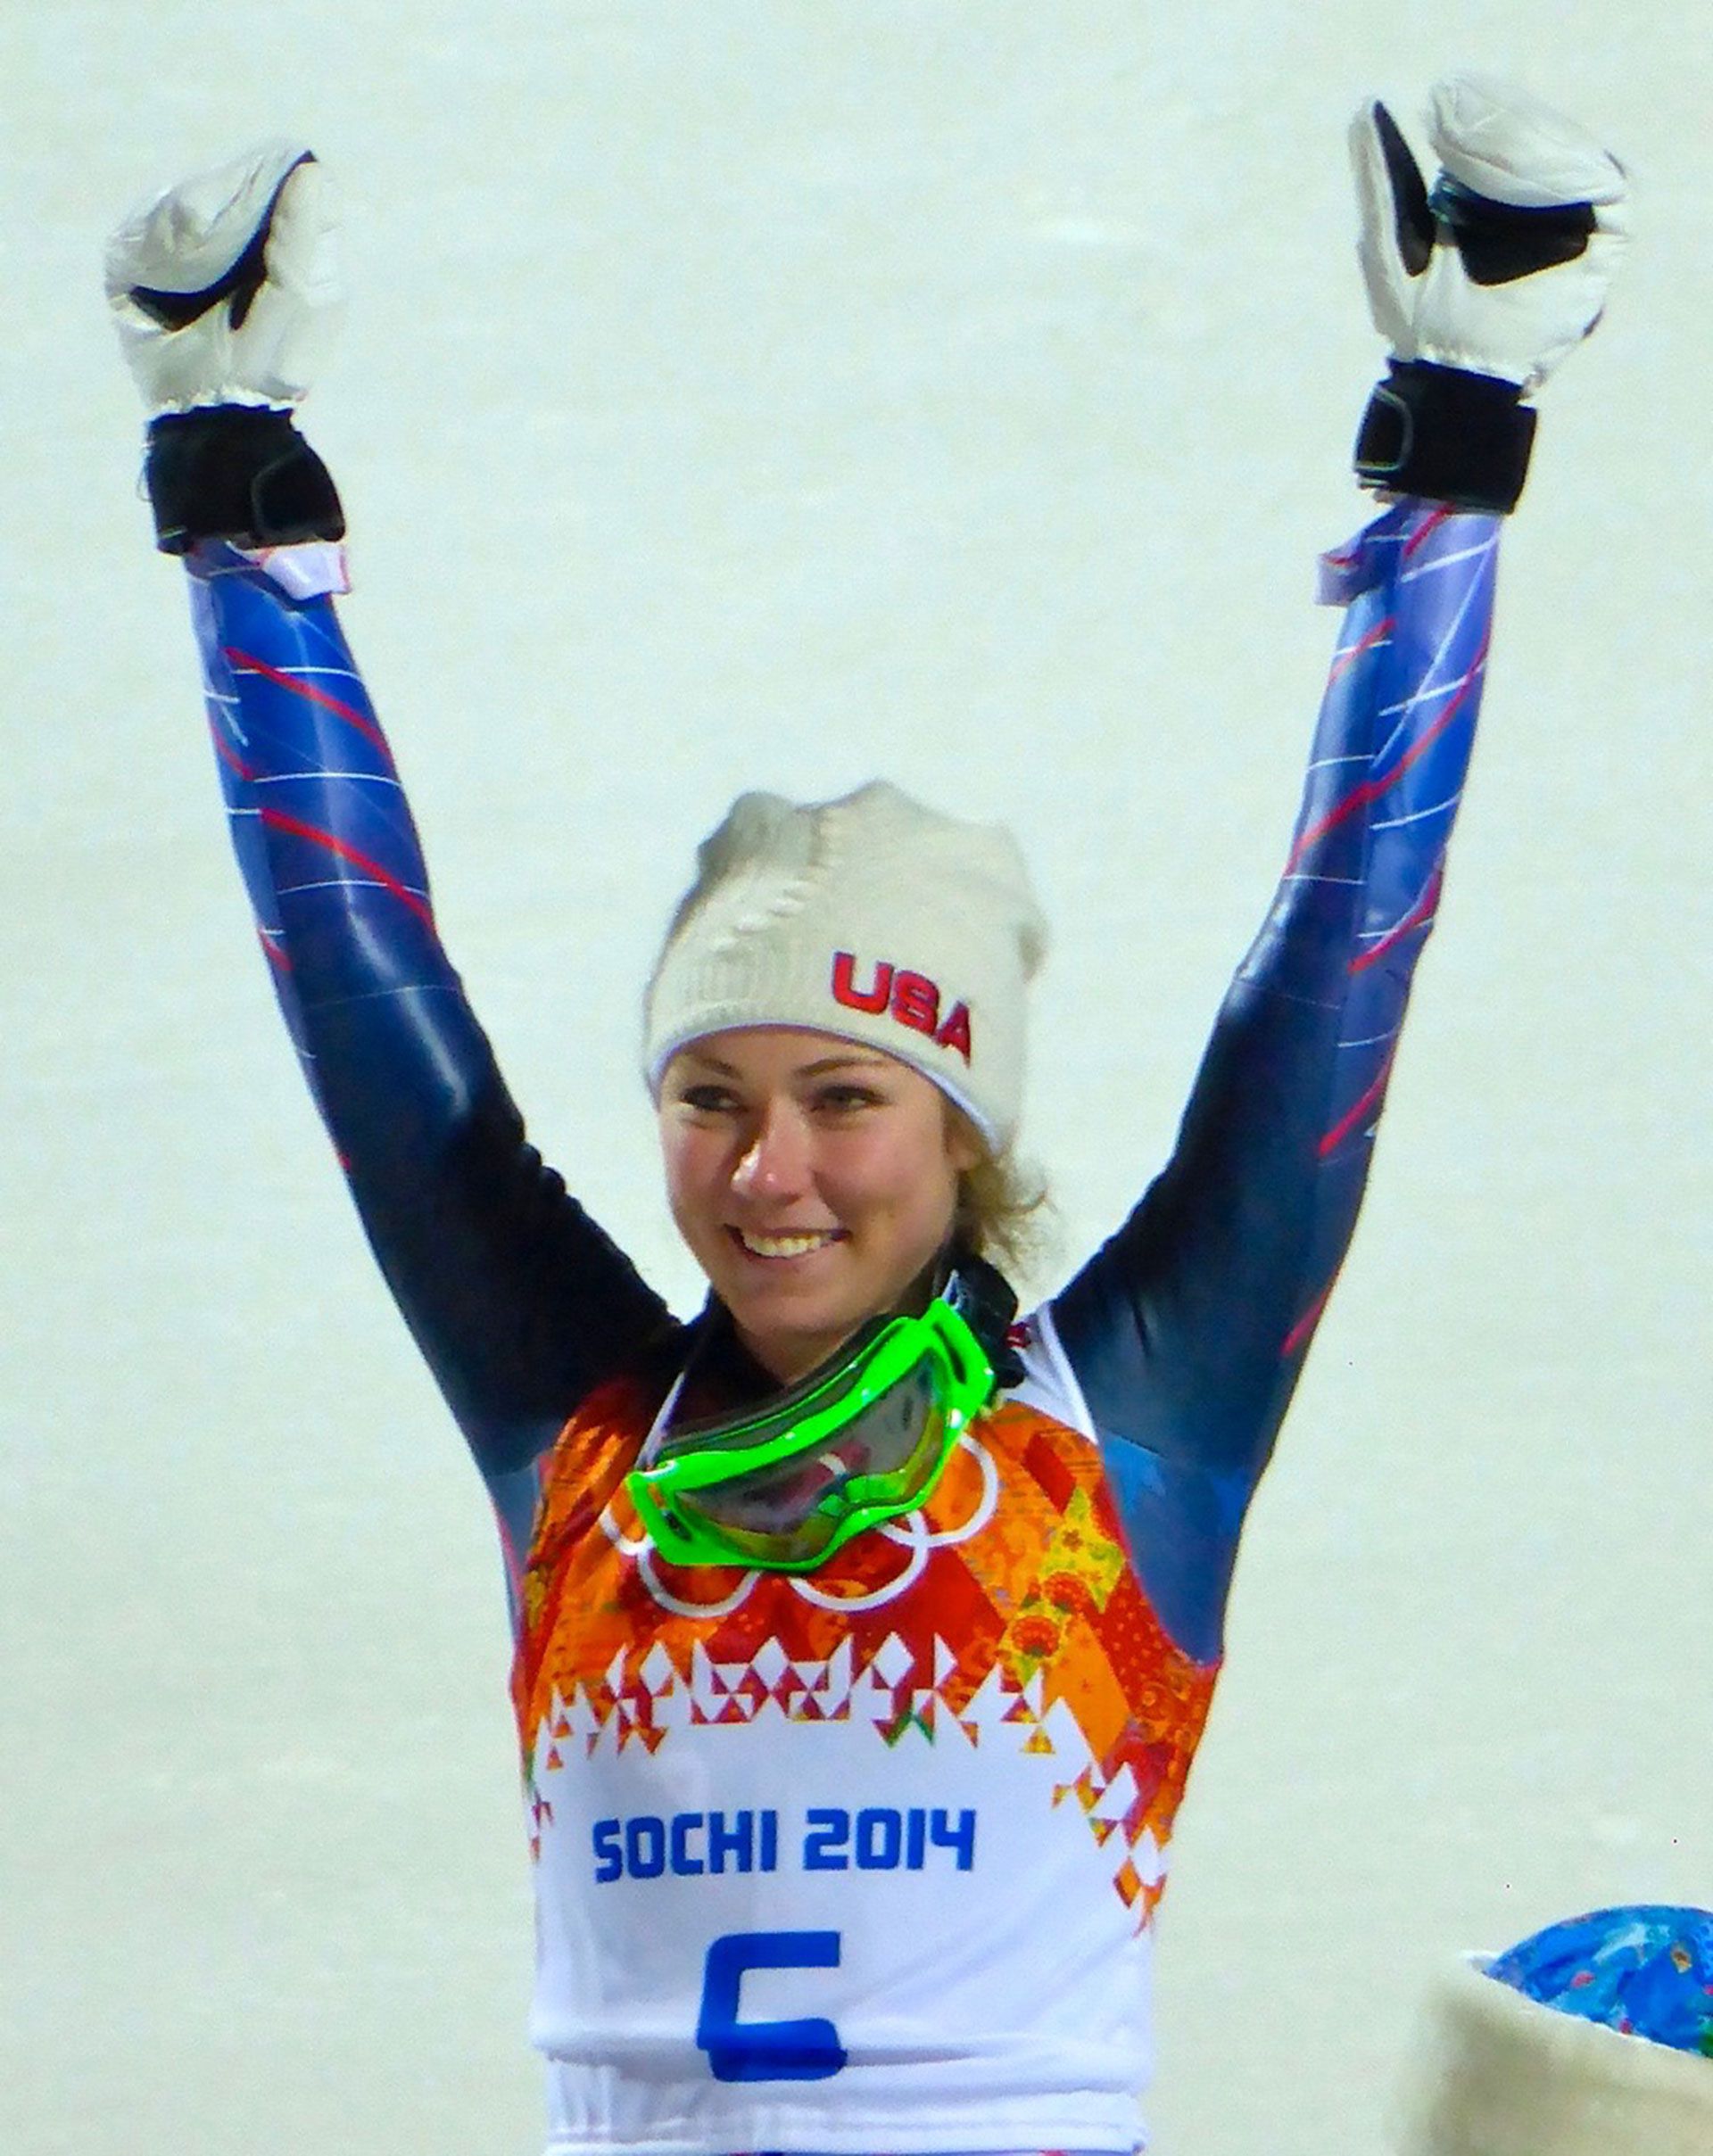 Shiffrin gold in Sochi 2014